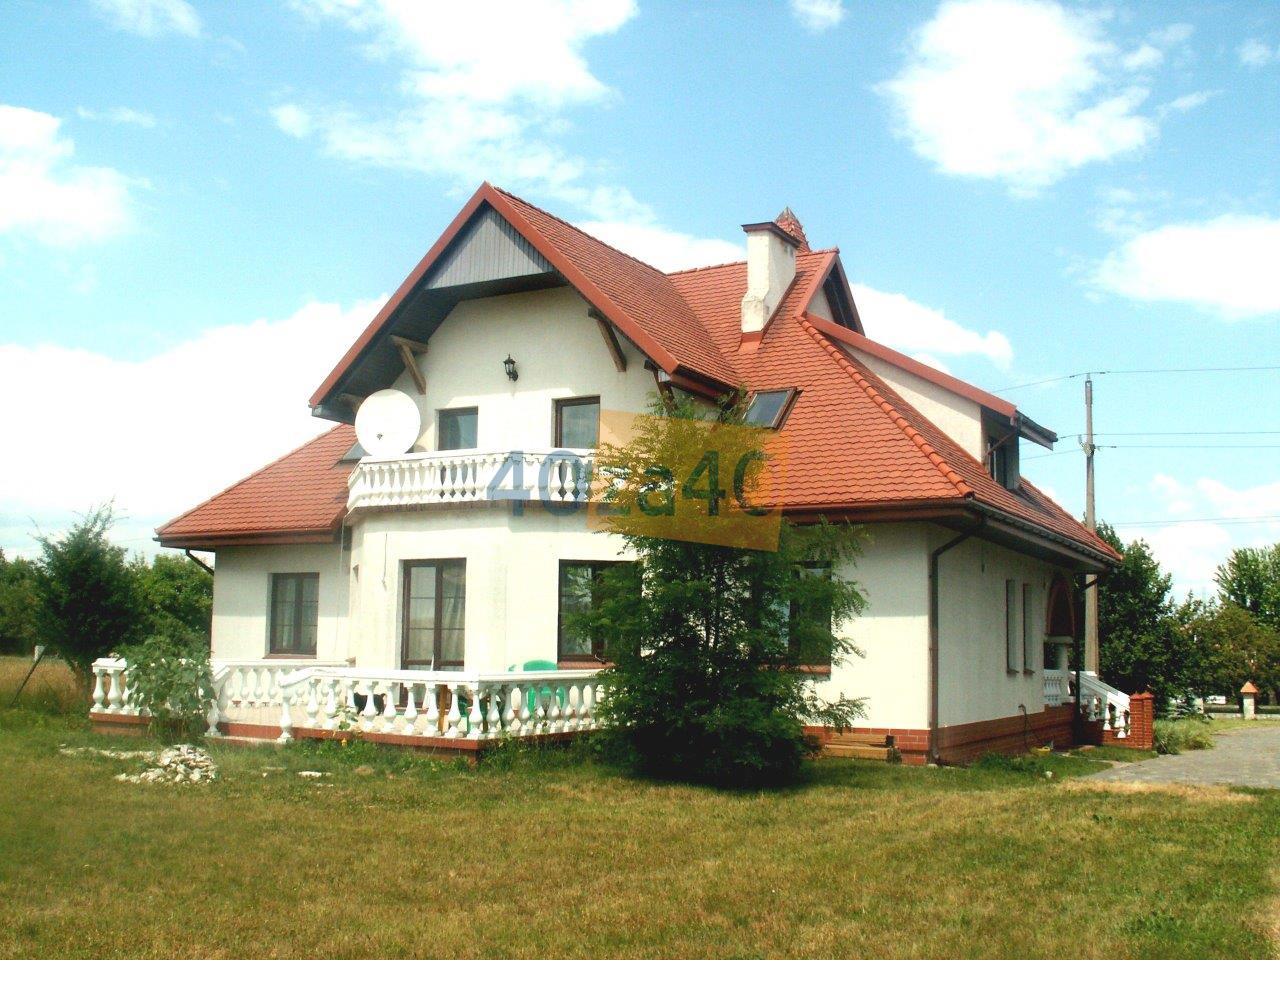 Dom na sprzedaż, powierzchnia: 400 m2, pokoje: 8, cena: 1 350 000,00 PLN, Dębówka, kontakt: 693 704 142